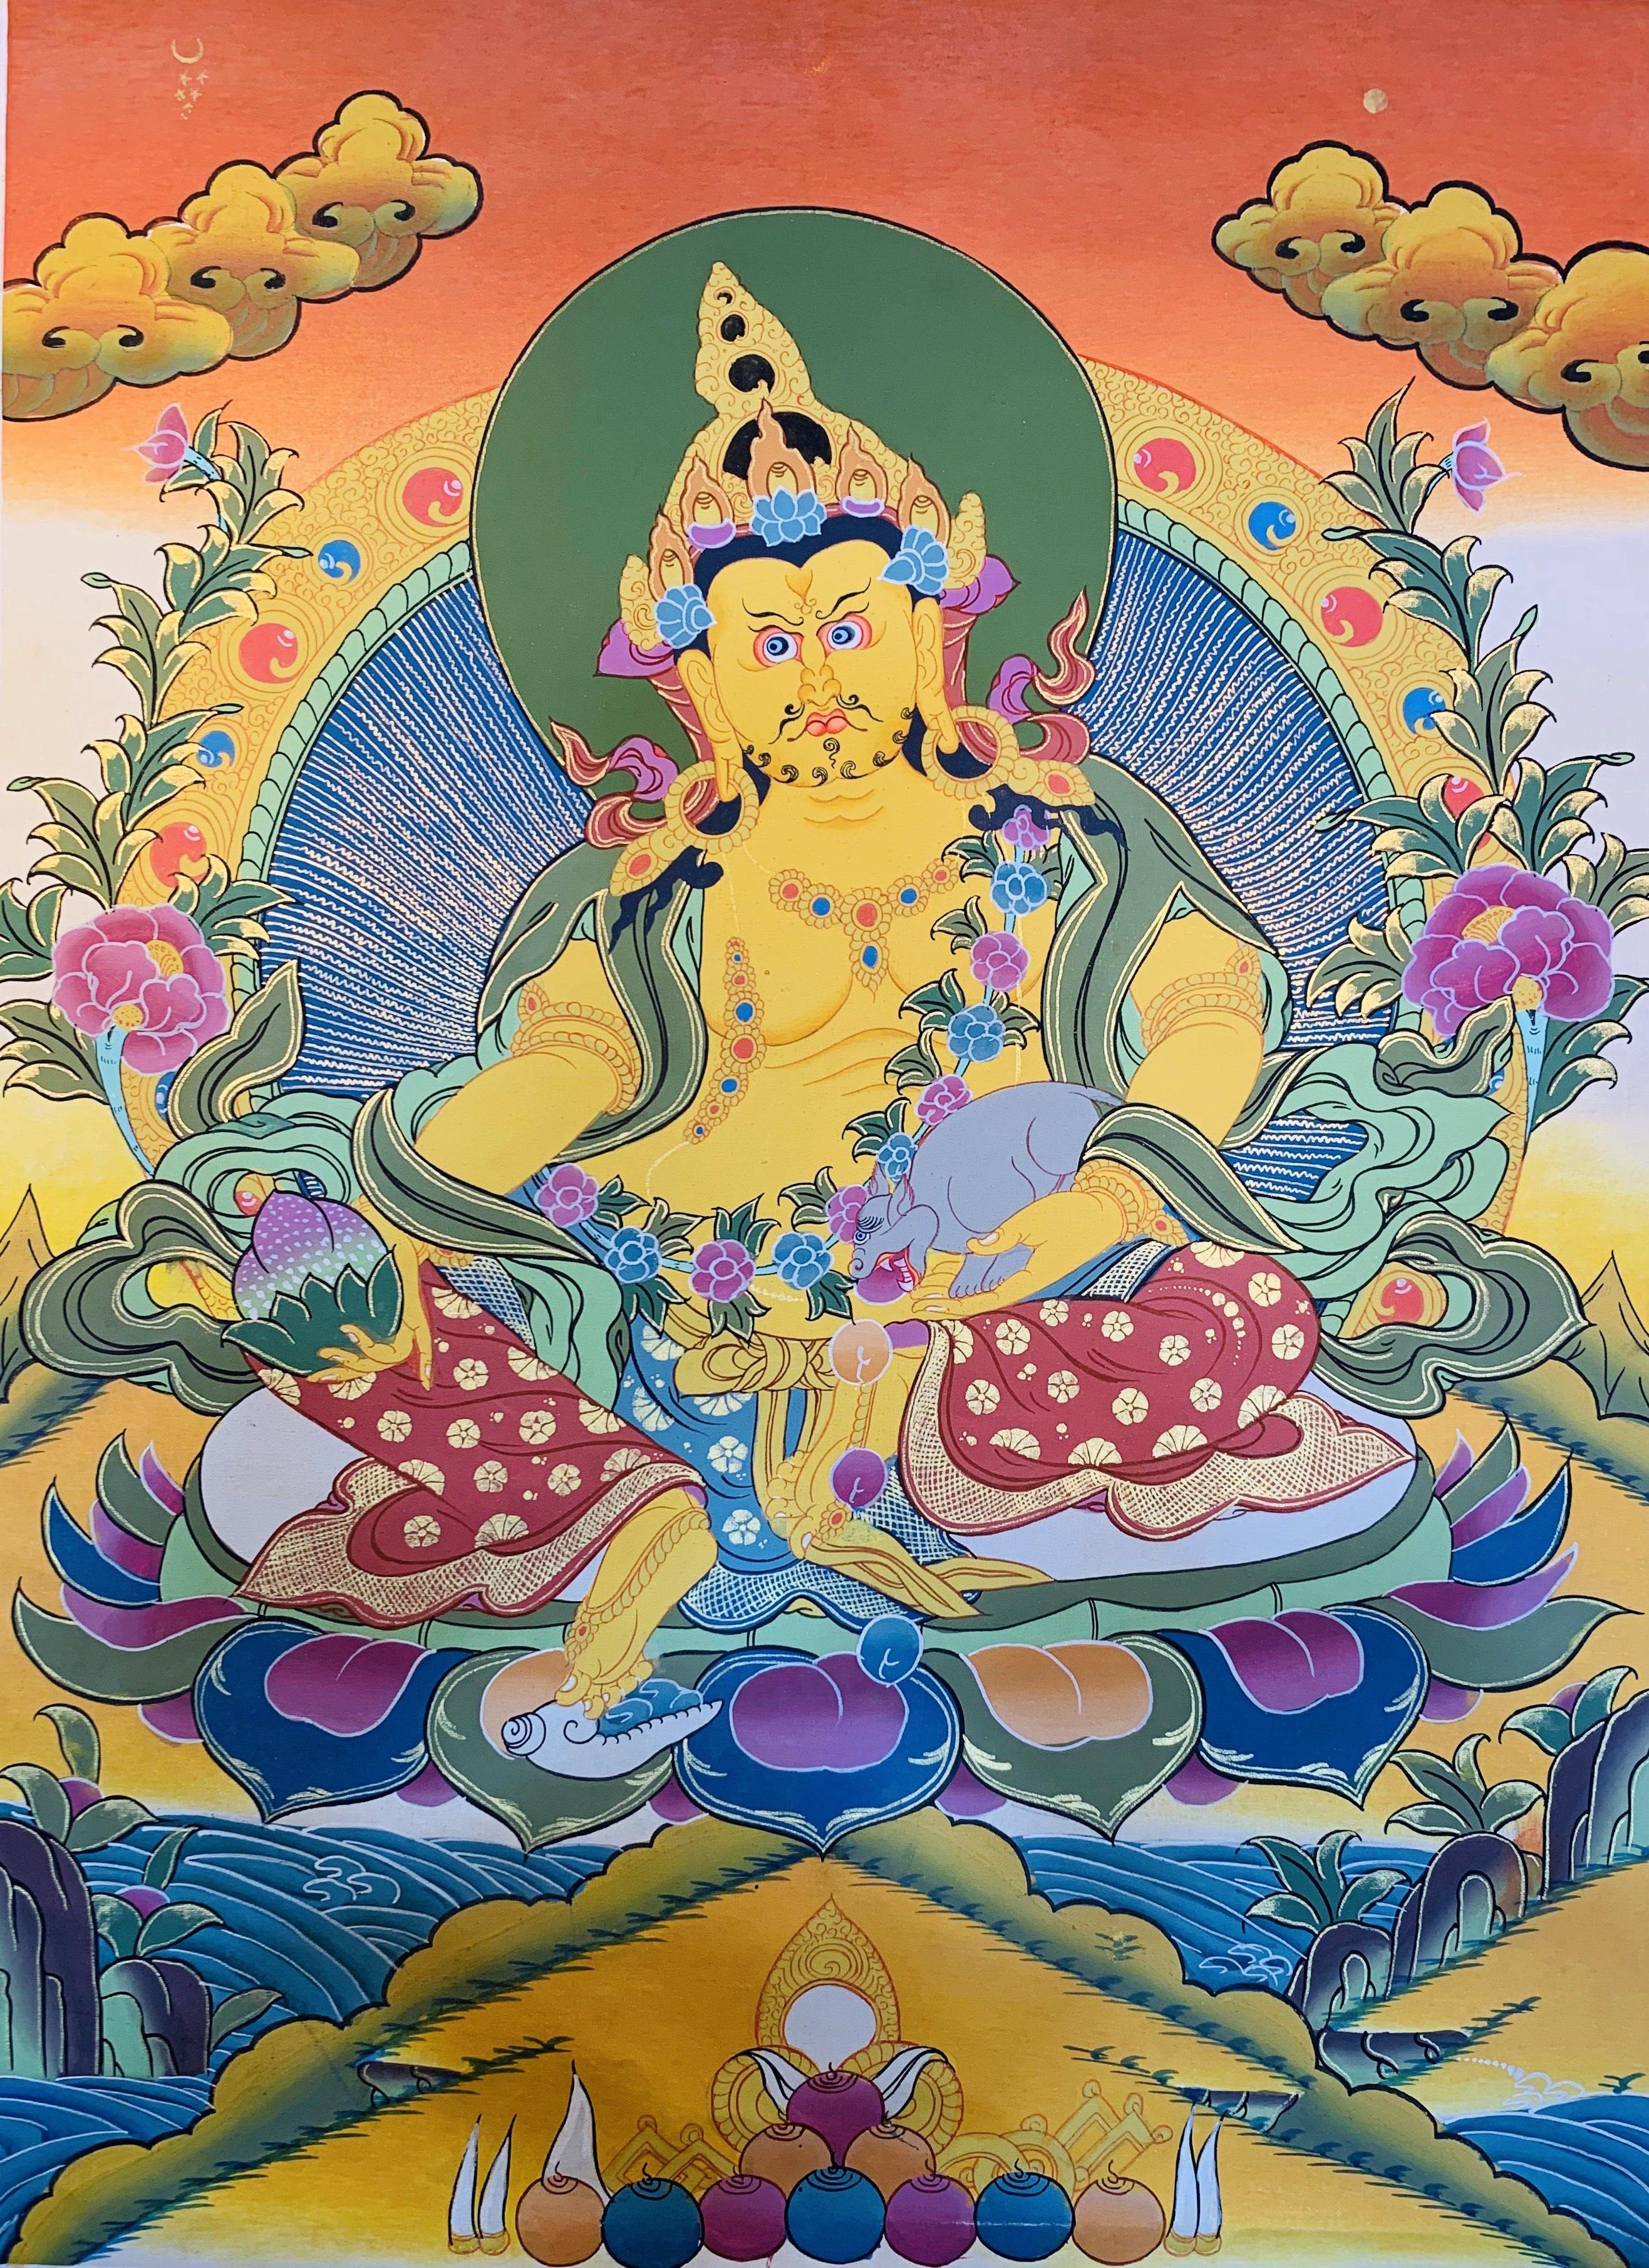 Jambhala Thangka Painting 40*30 - The Thangka